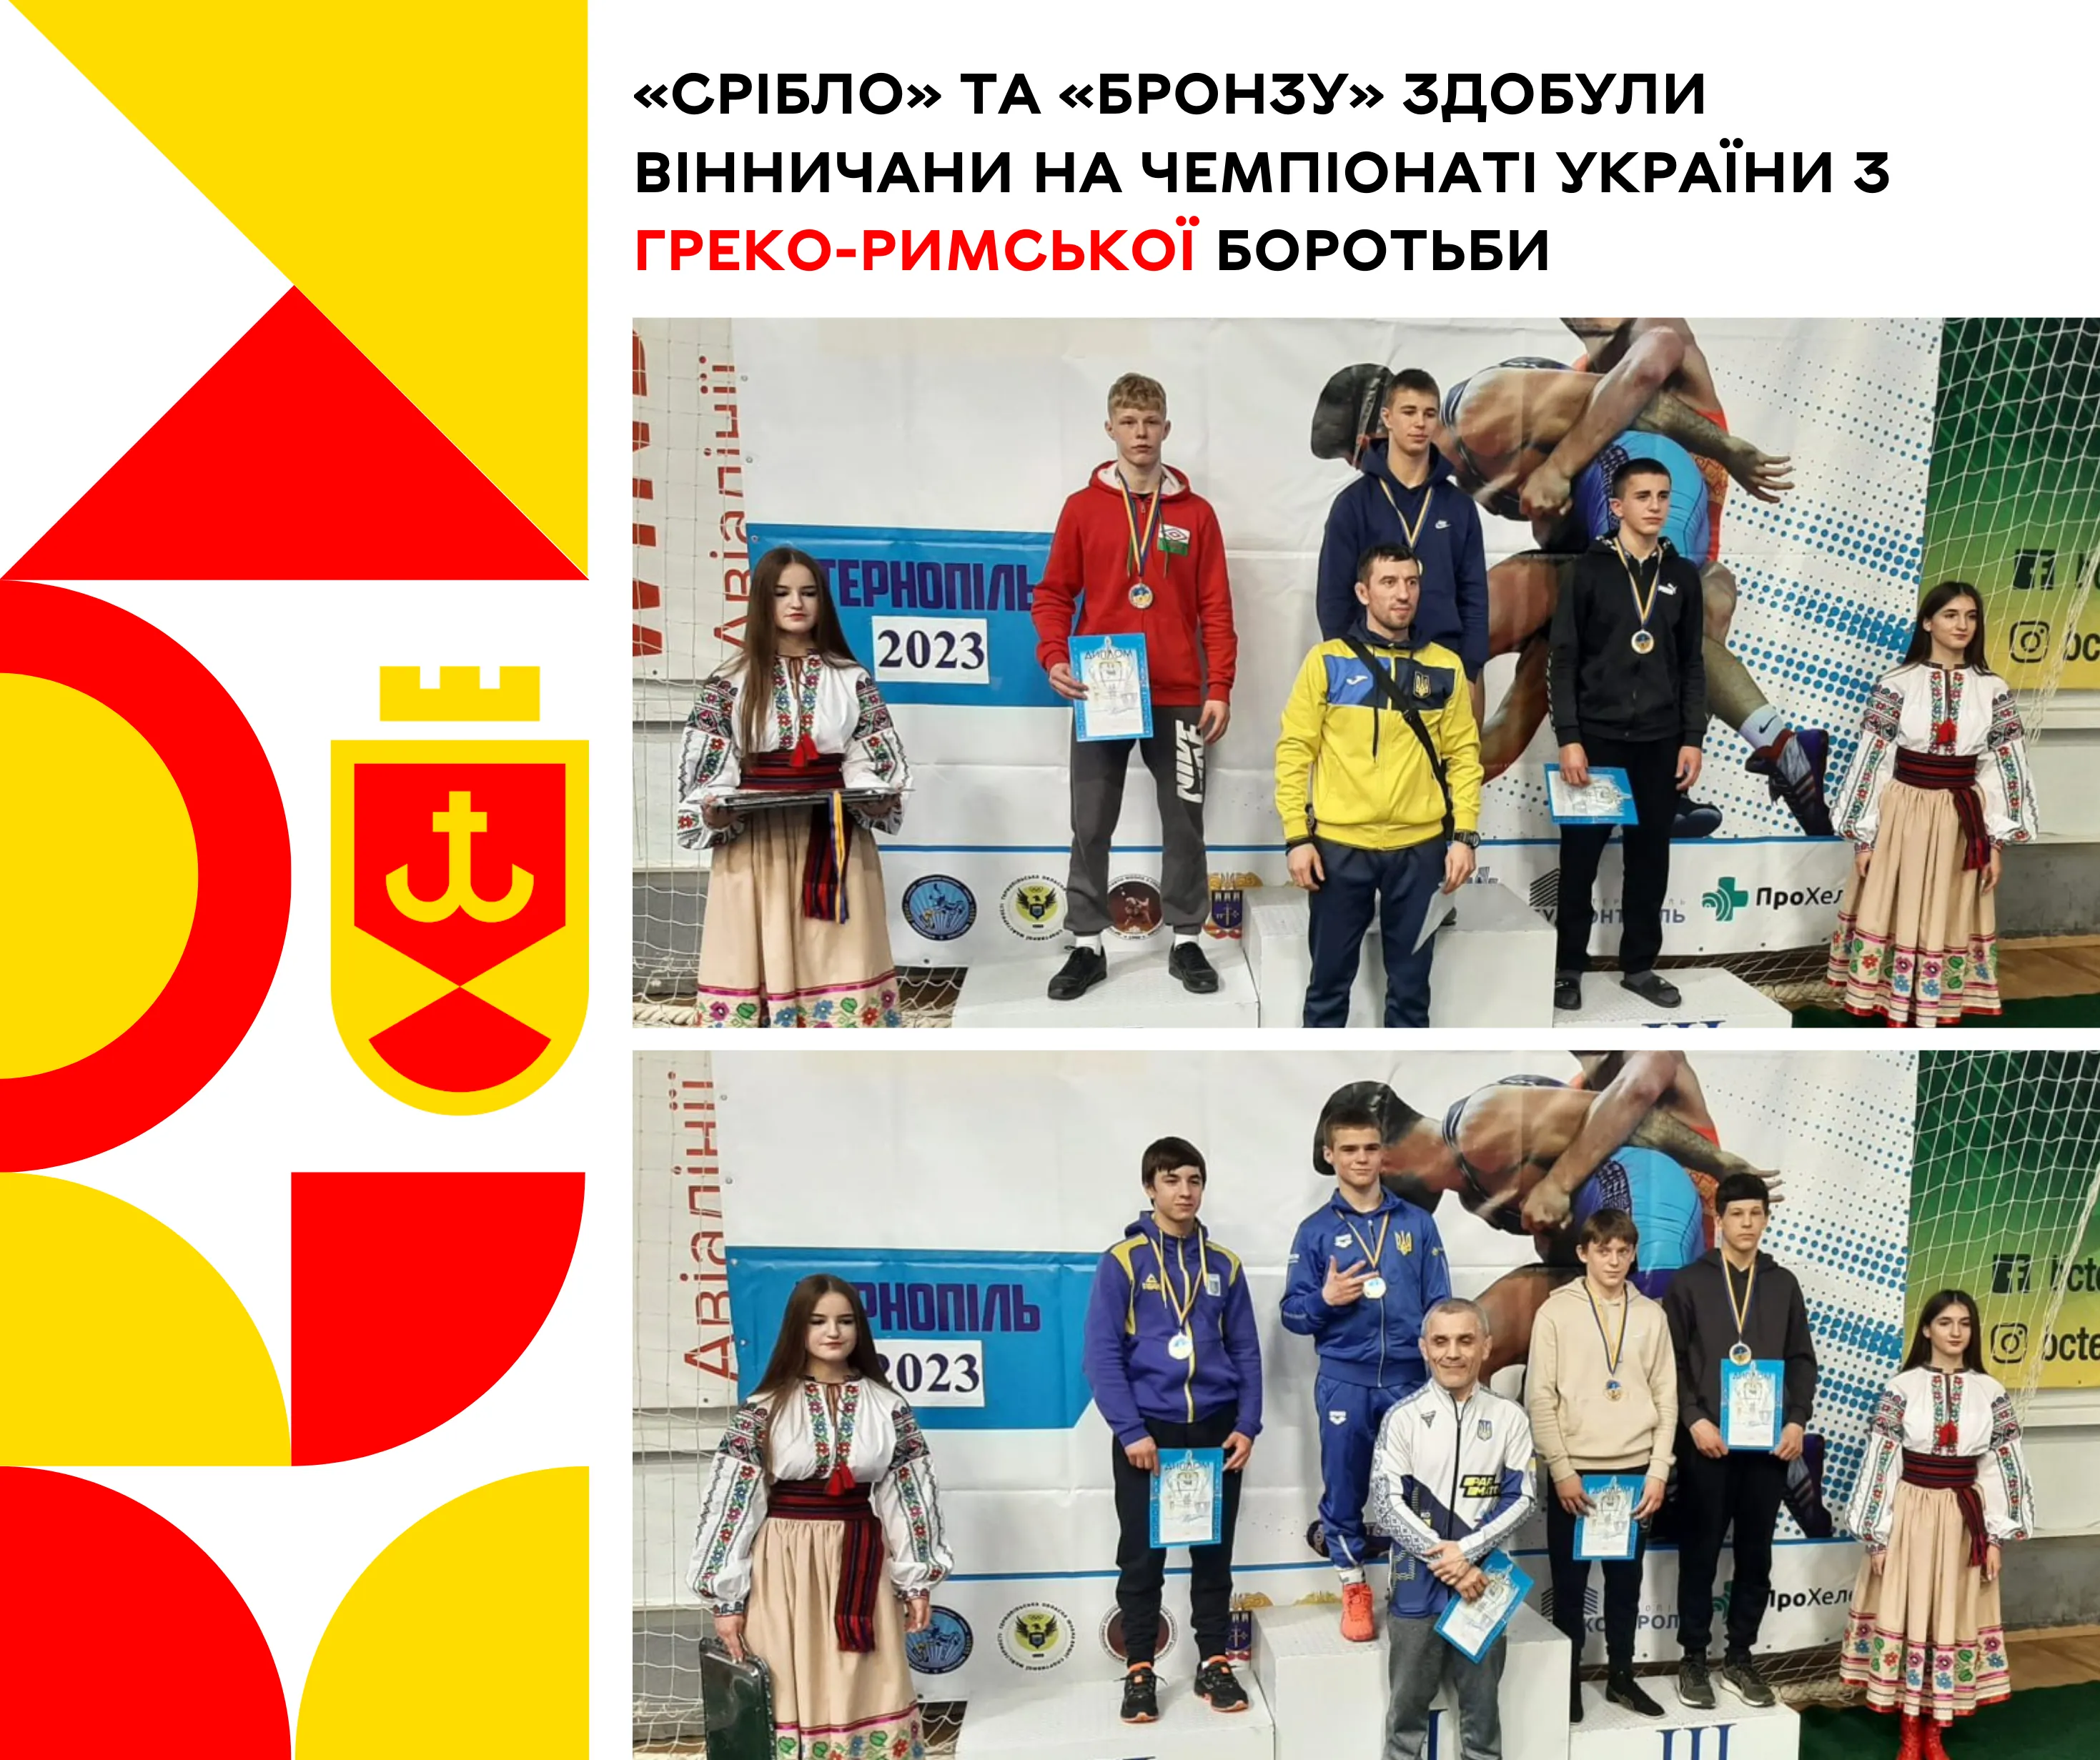 «Срібло» та «бронзу» здобули вінничани на чемпіонаті України з греко-римської боротьби